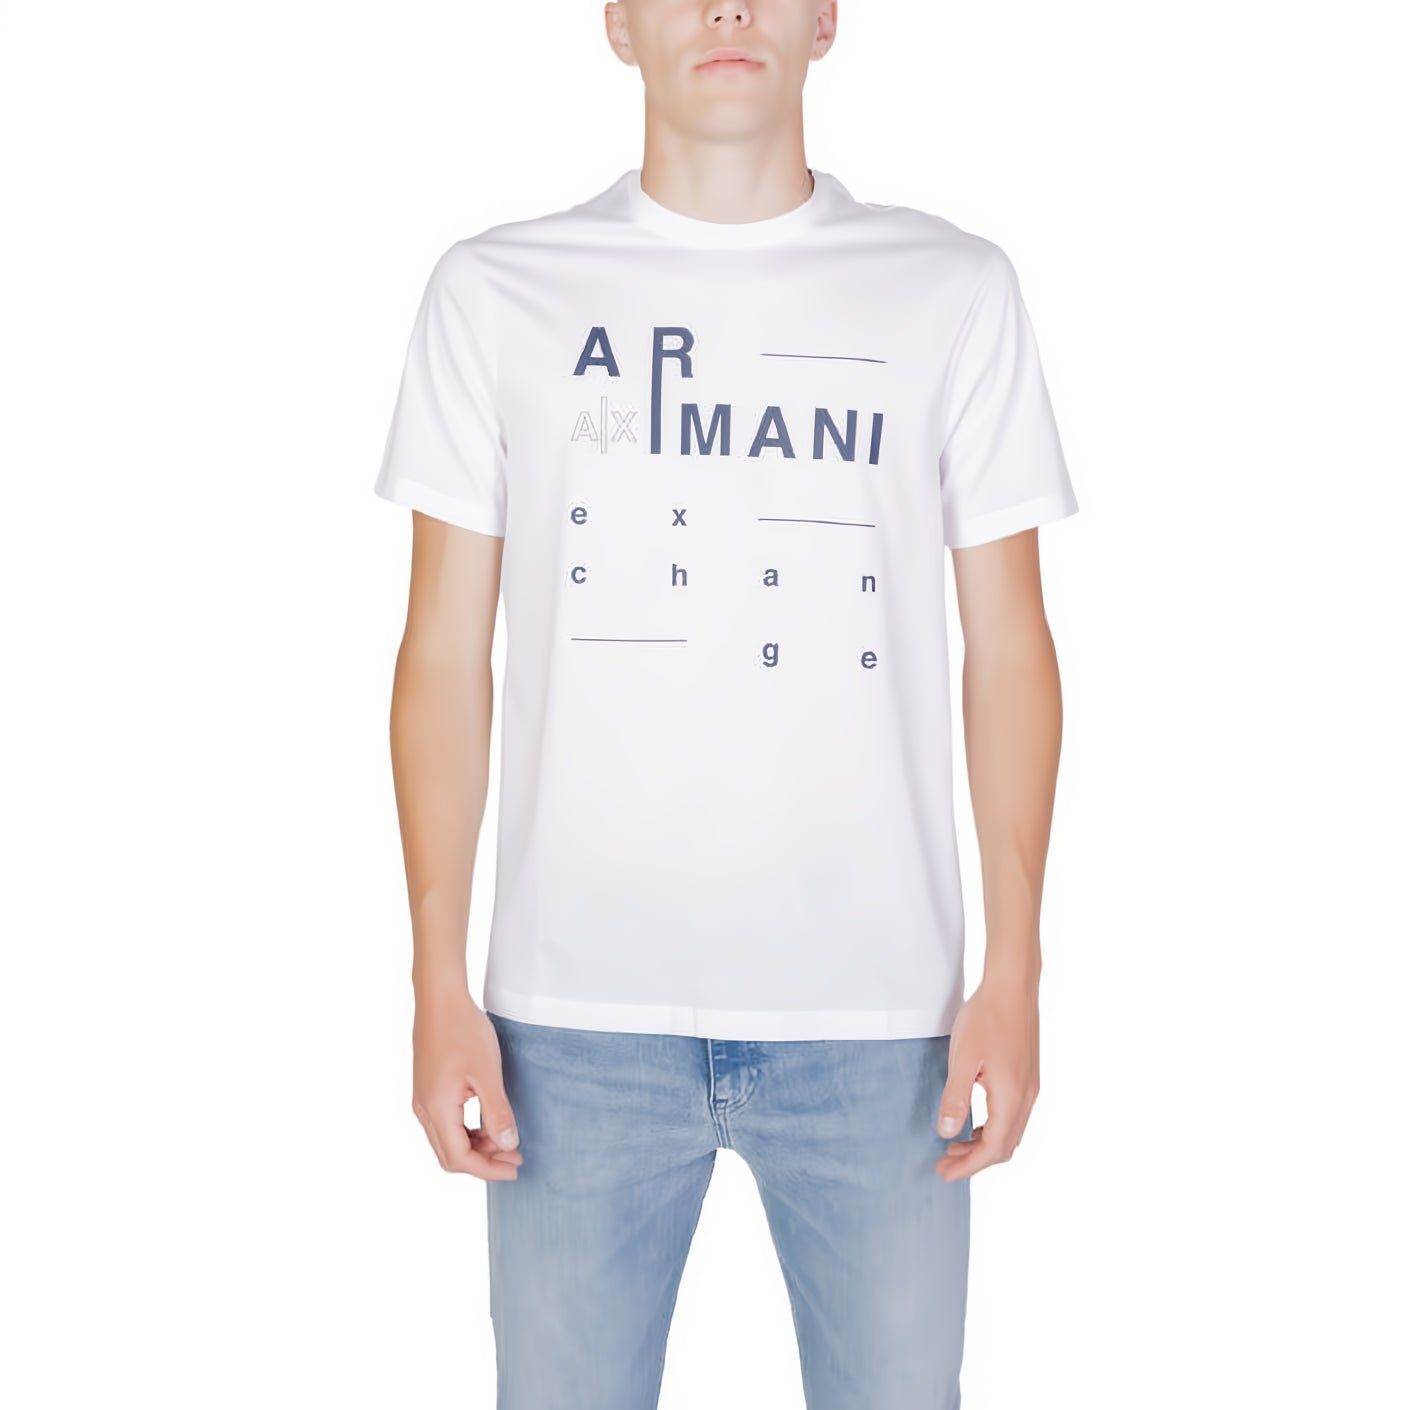 kurzarm, ein EXCHANGE Ihre Rundhals, für Kleidungskollektion! ARMANI T-Shirt Must-Have